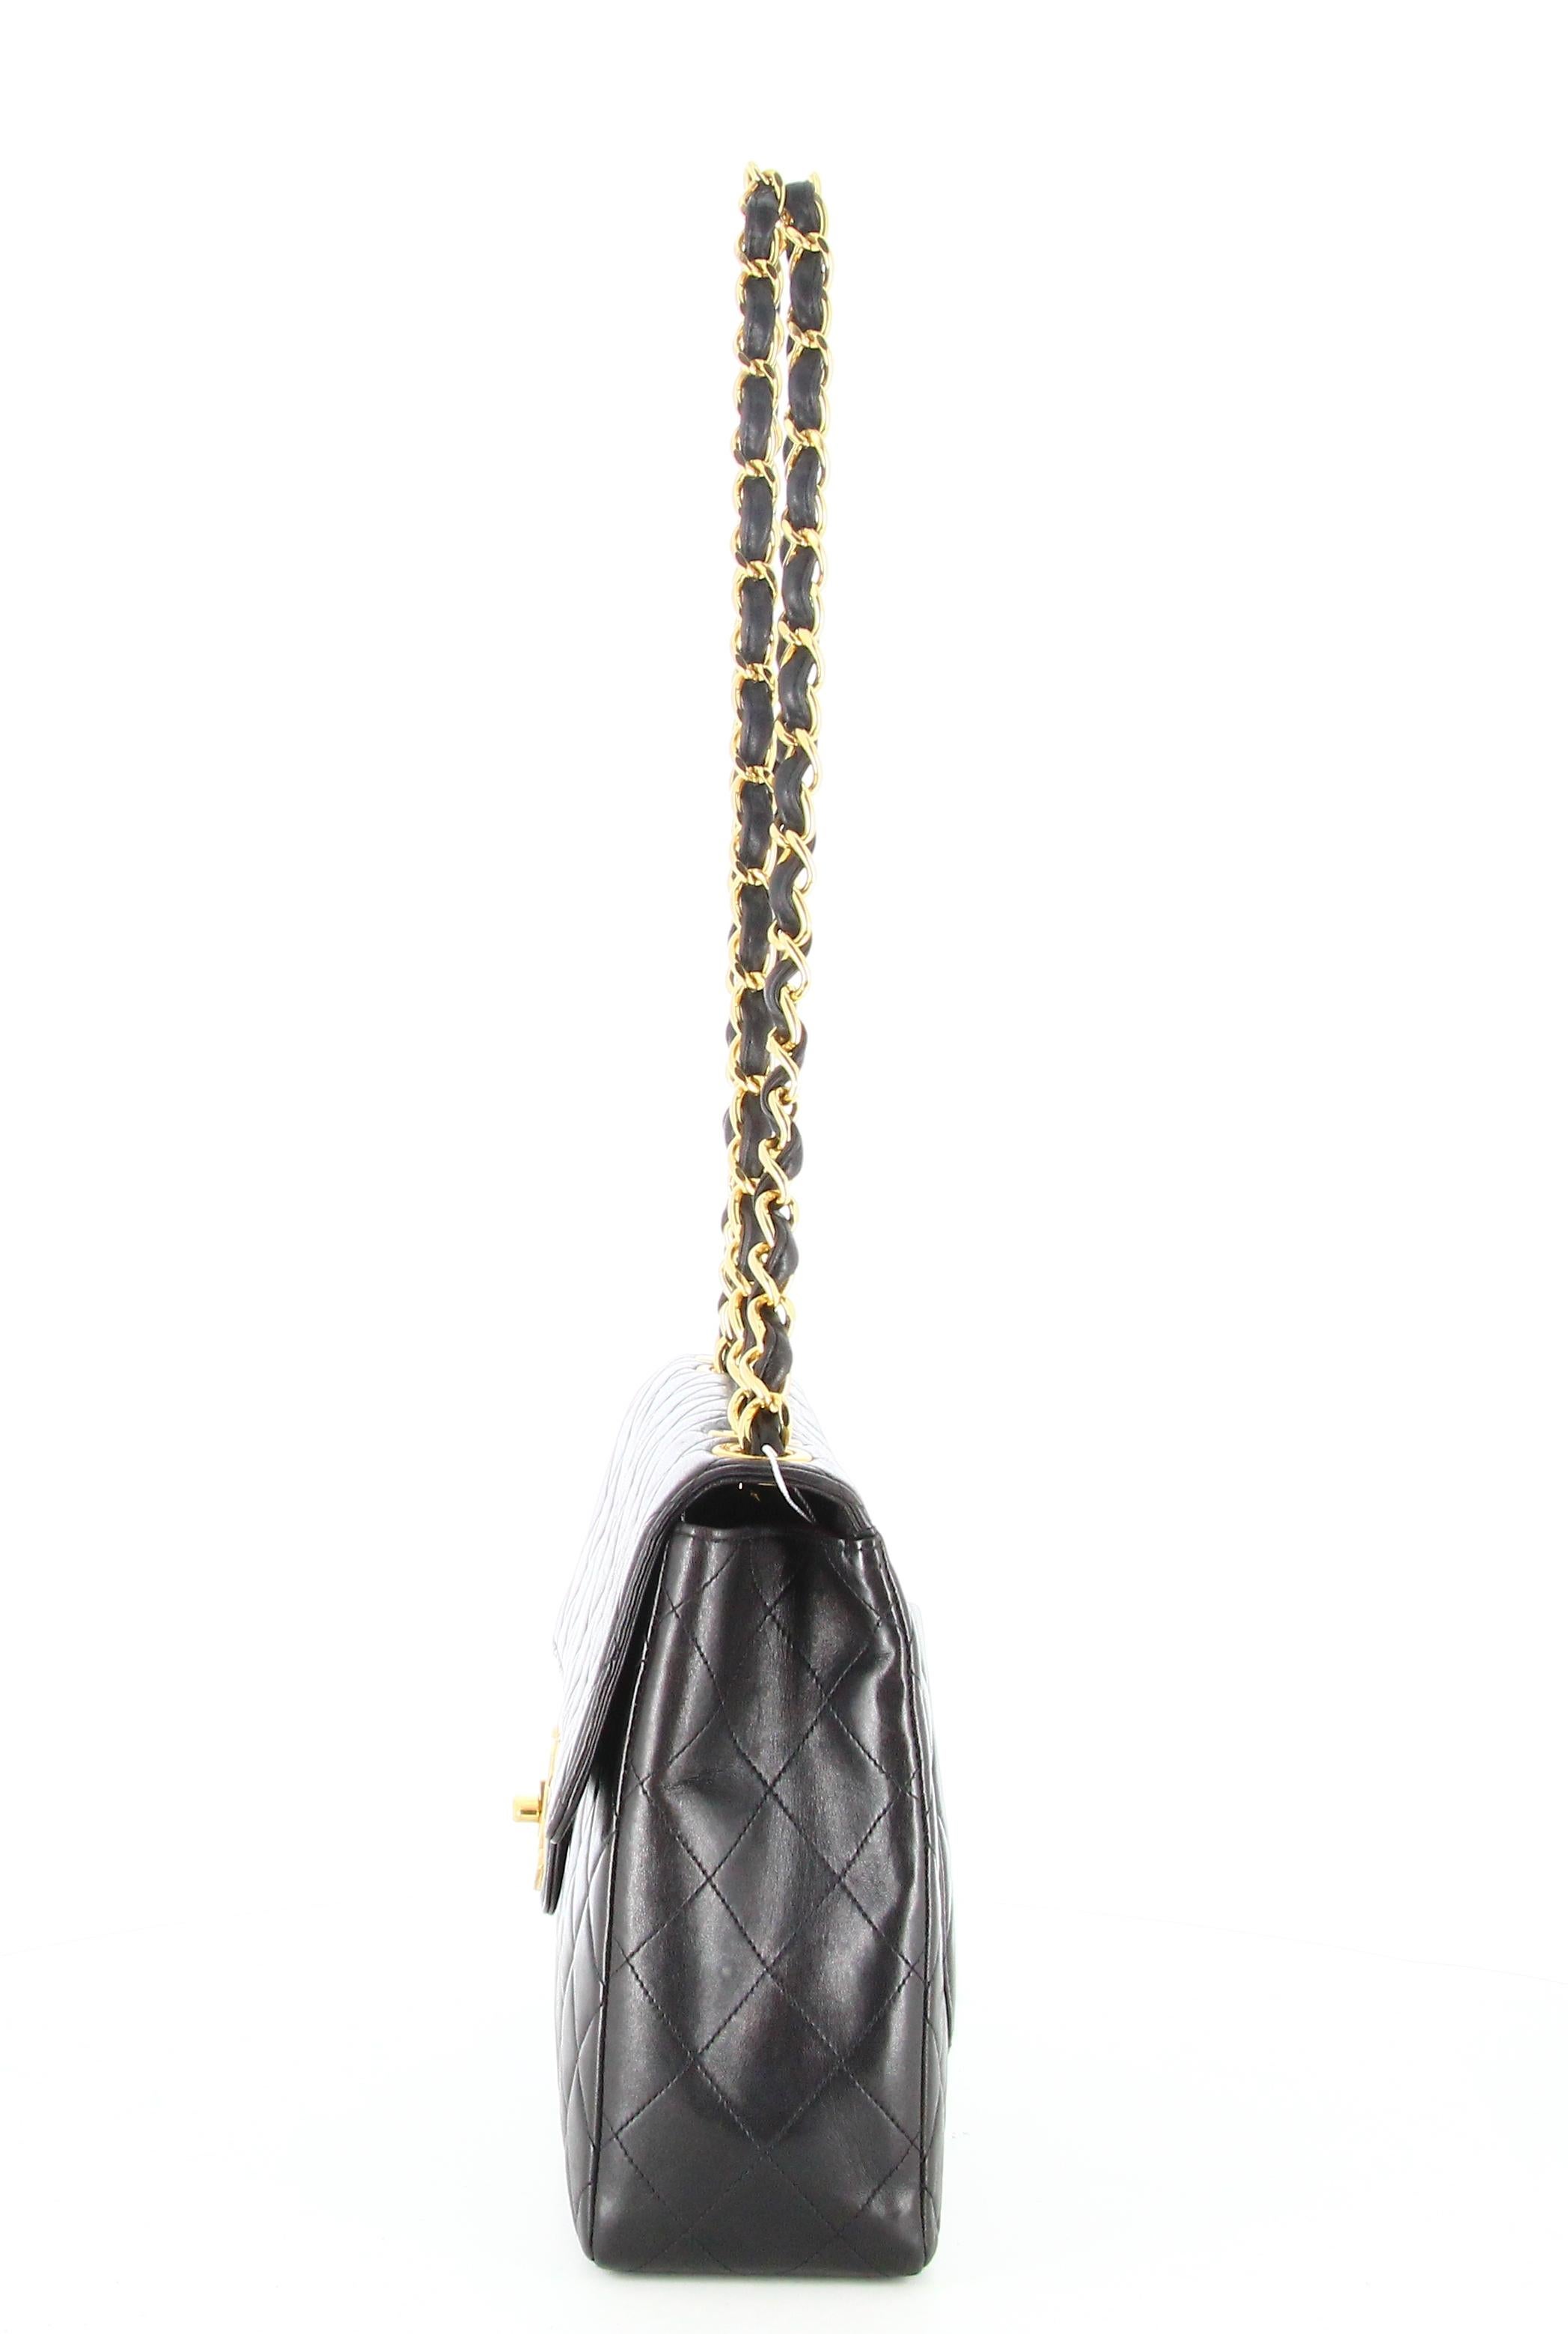 Women's 1994 Chanel Timeless Jumbo Quilted Handbag Black Golden